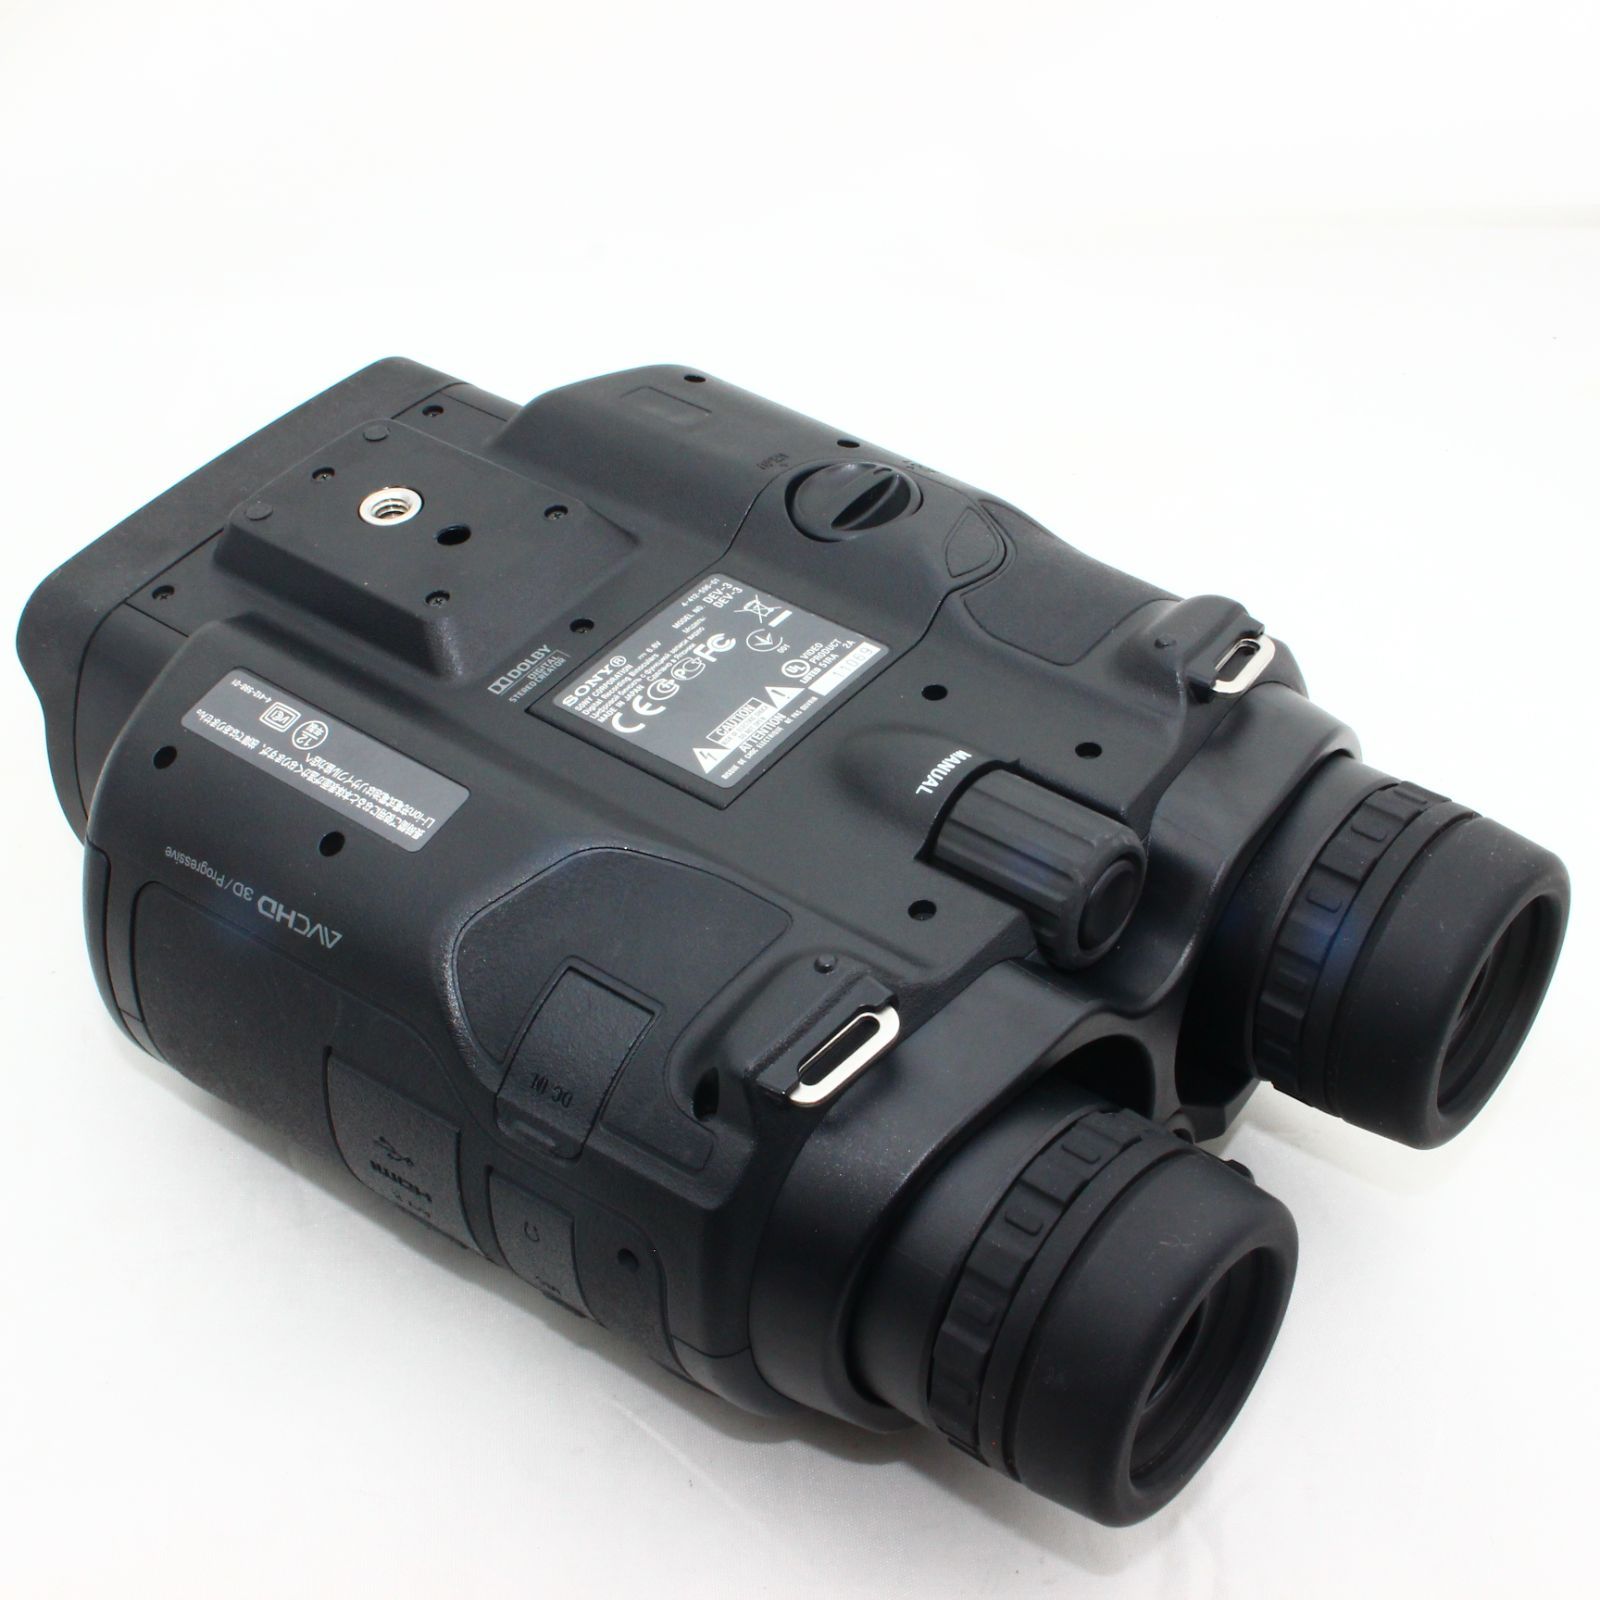 ソニー SONY 双眼鏡 デジタル録画双眼鏡 DEV-3 ポロプリズム式 光学10倍 DEV-3